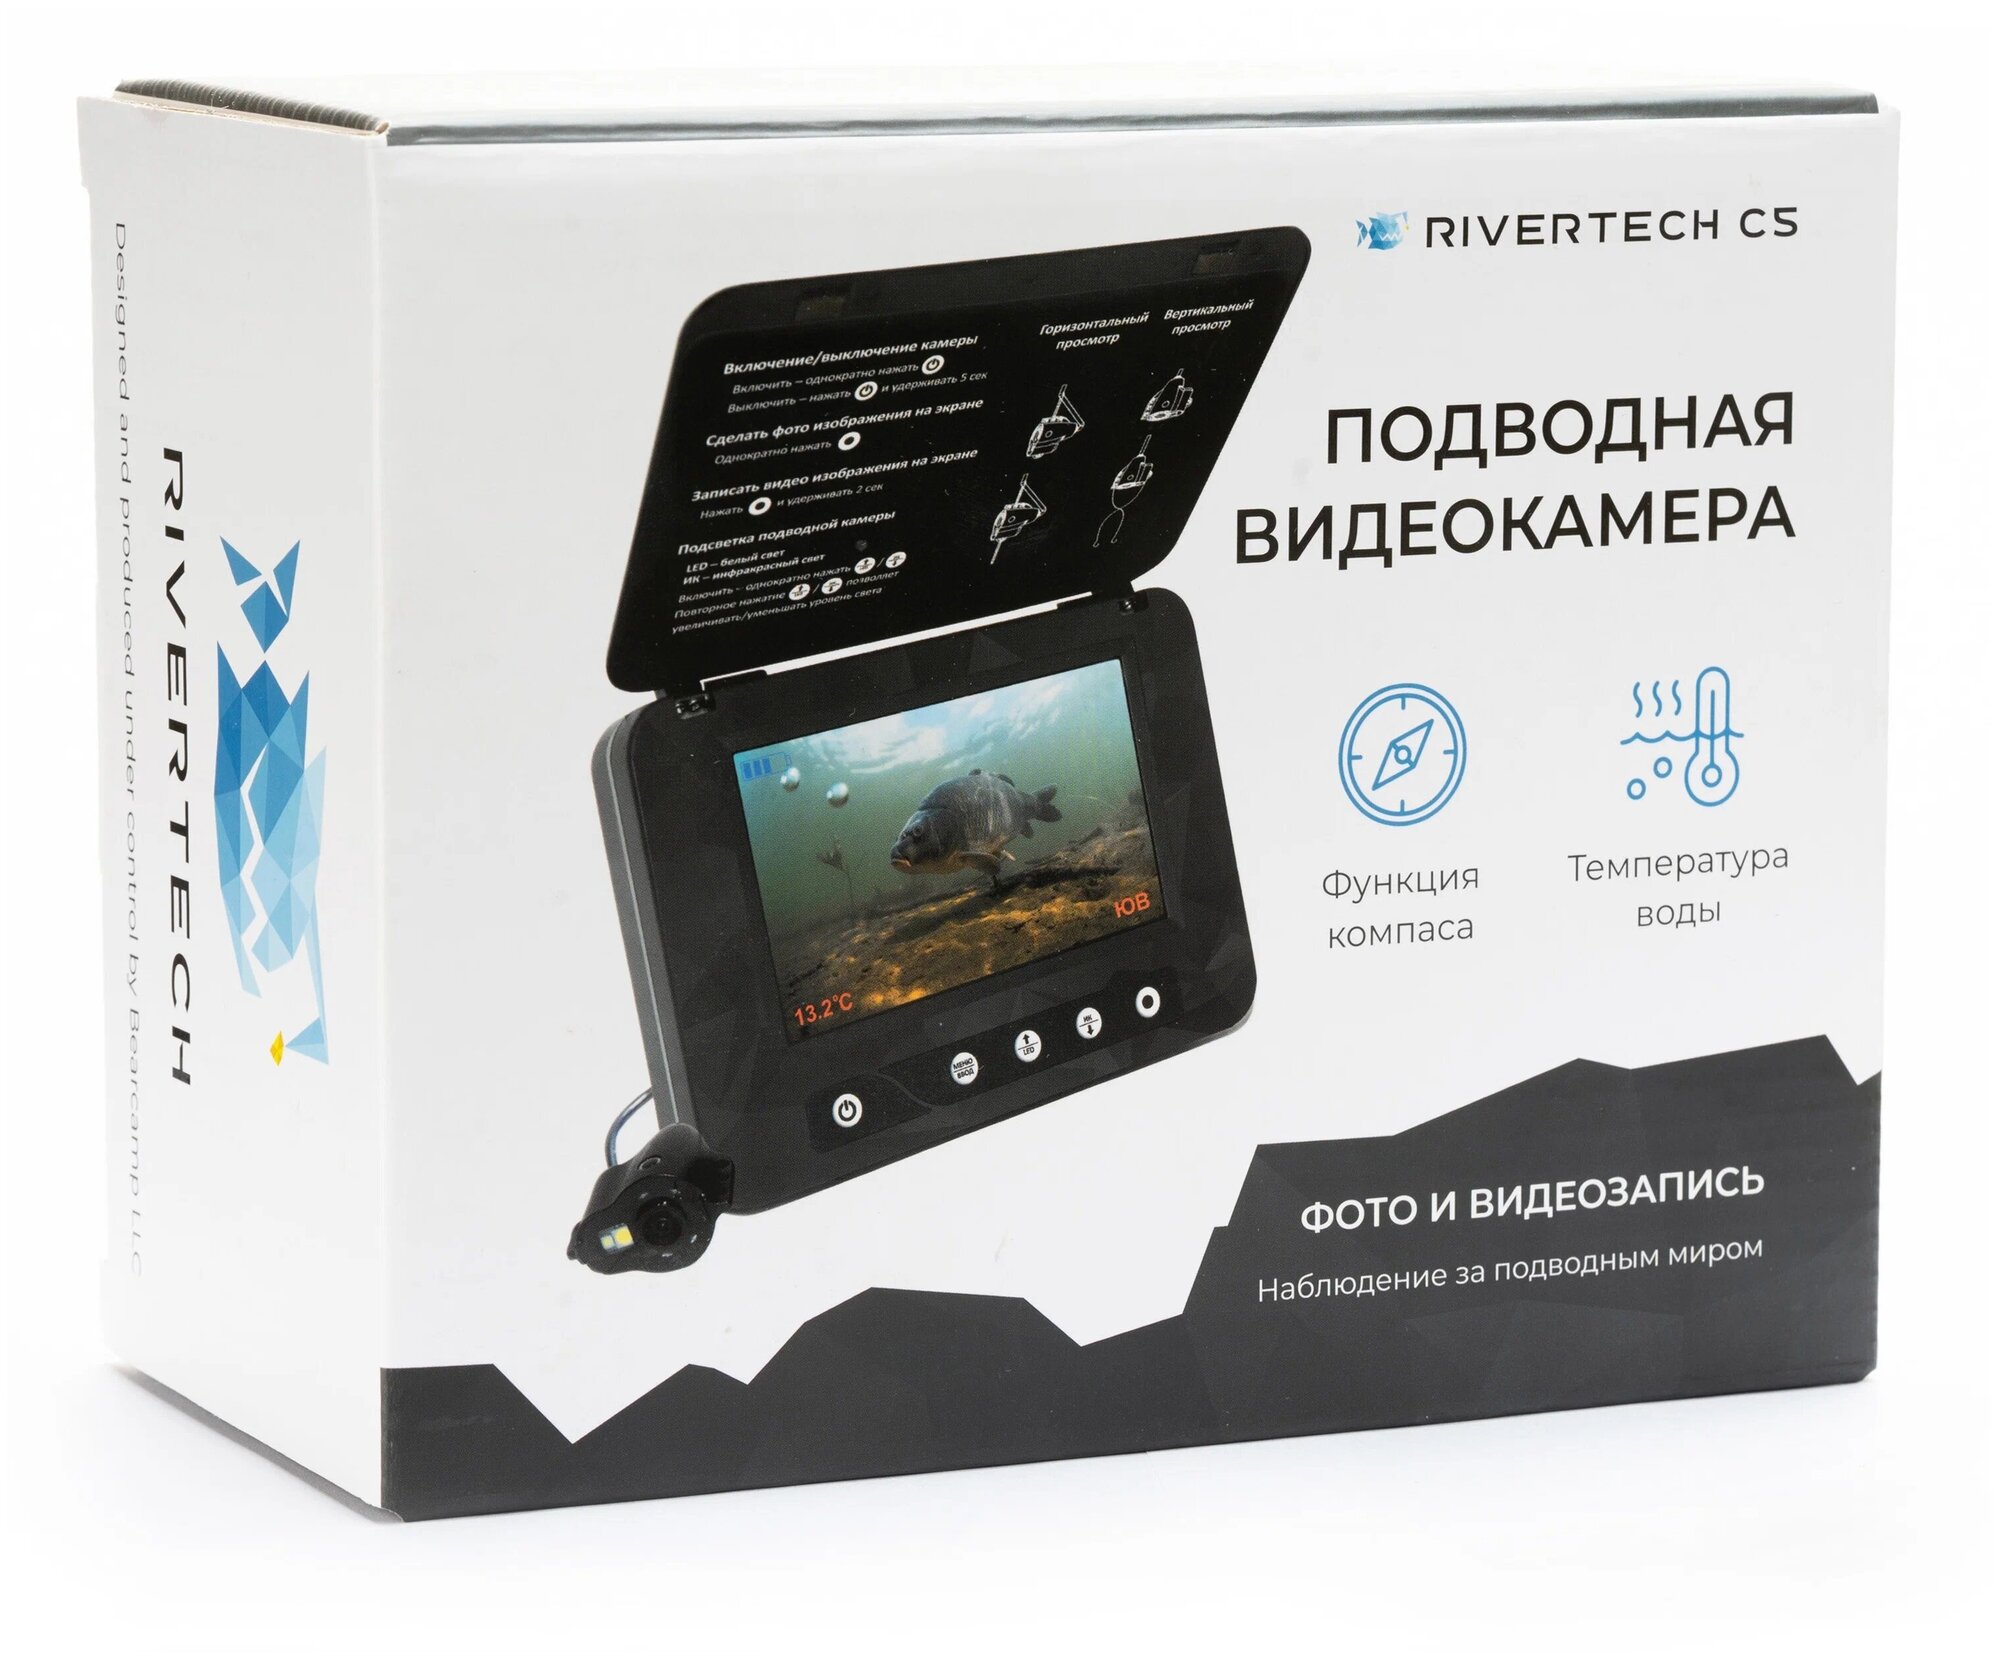 Подводная видеокамера для зимней рыбалки Rivertech C5 —  в .